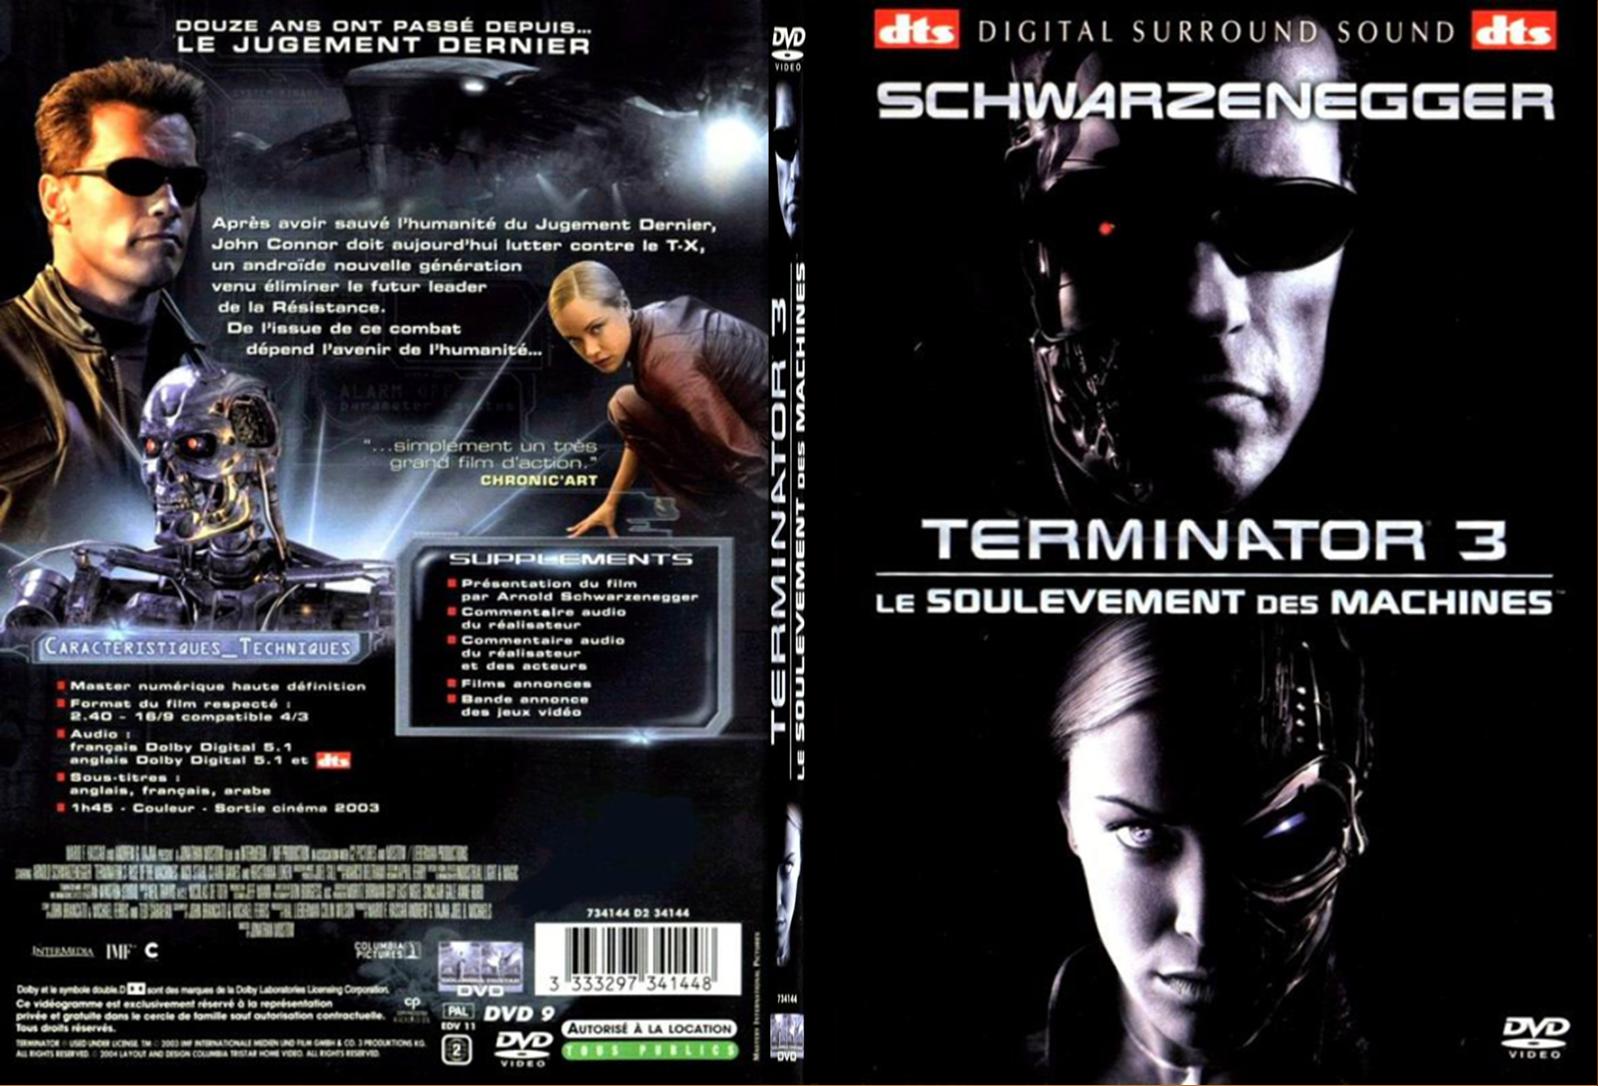 Jaquette DVD Terminator 3 - SLIM